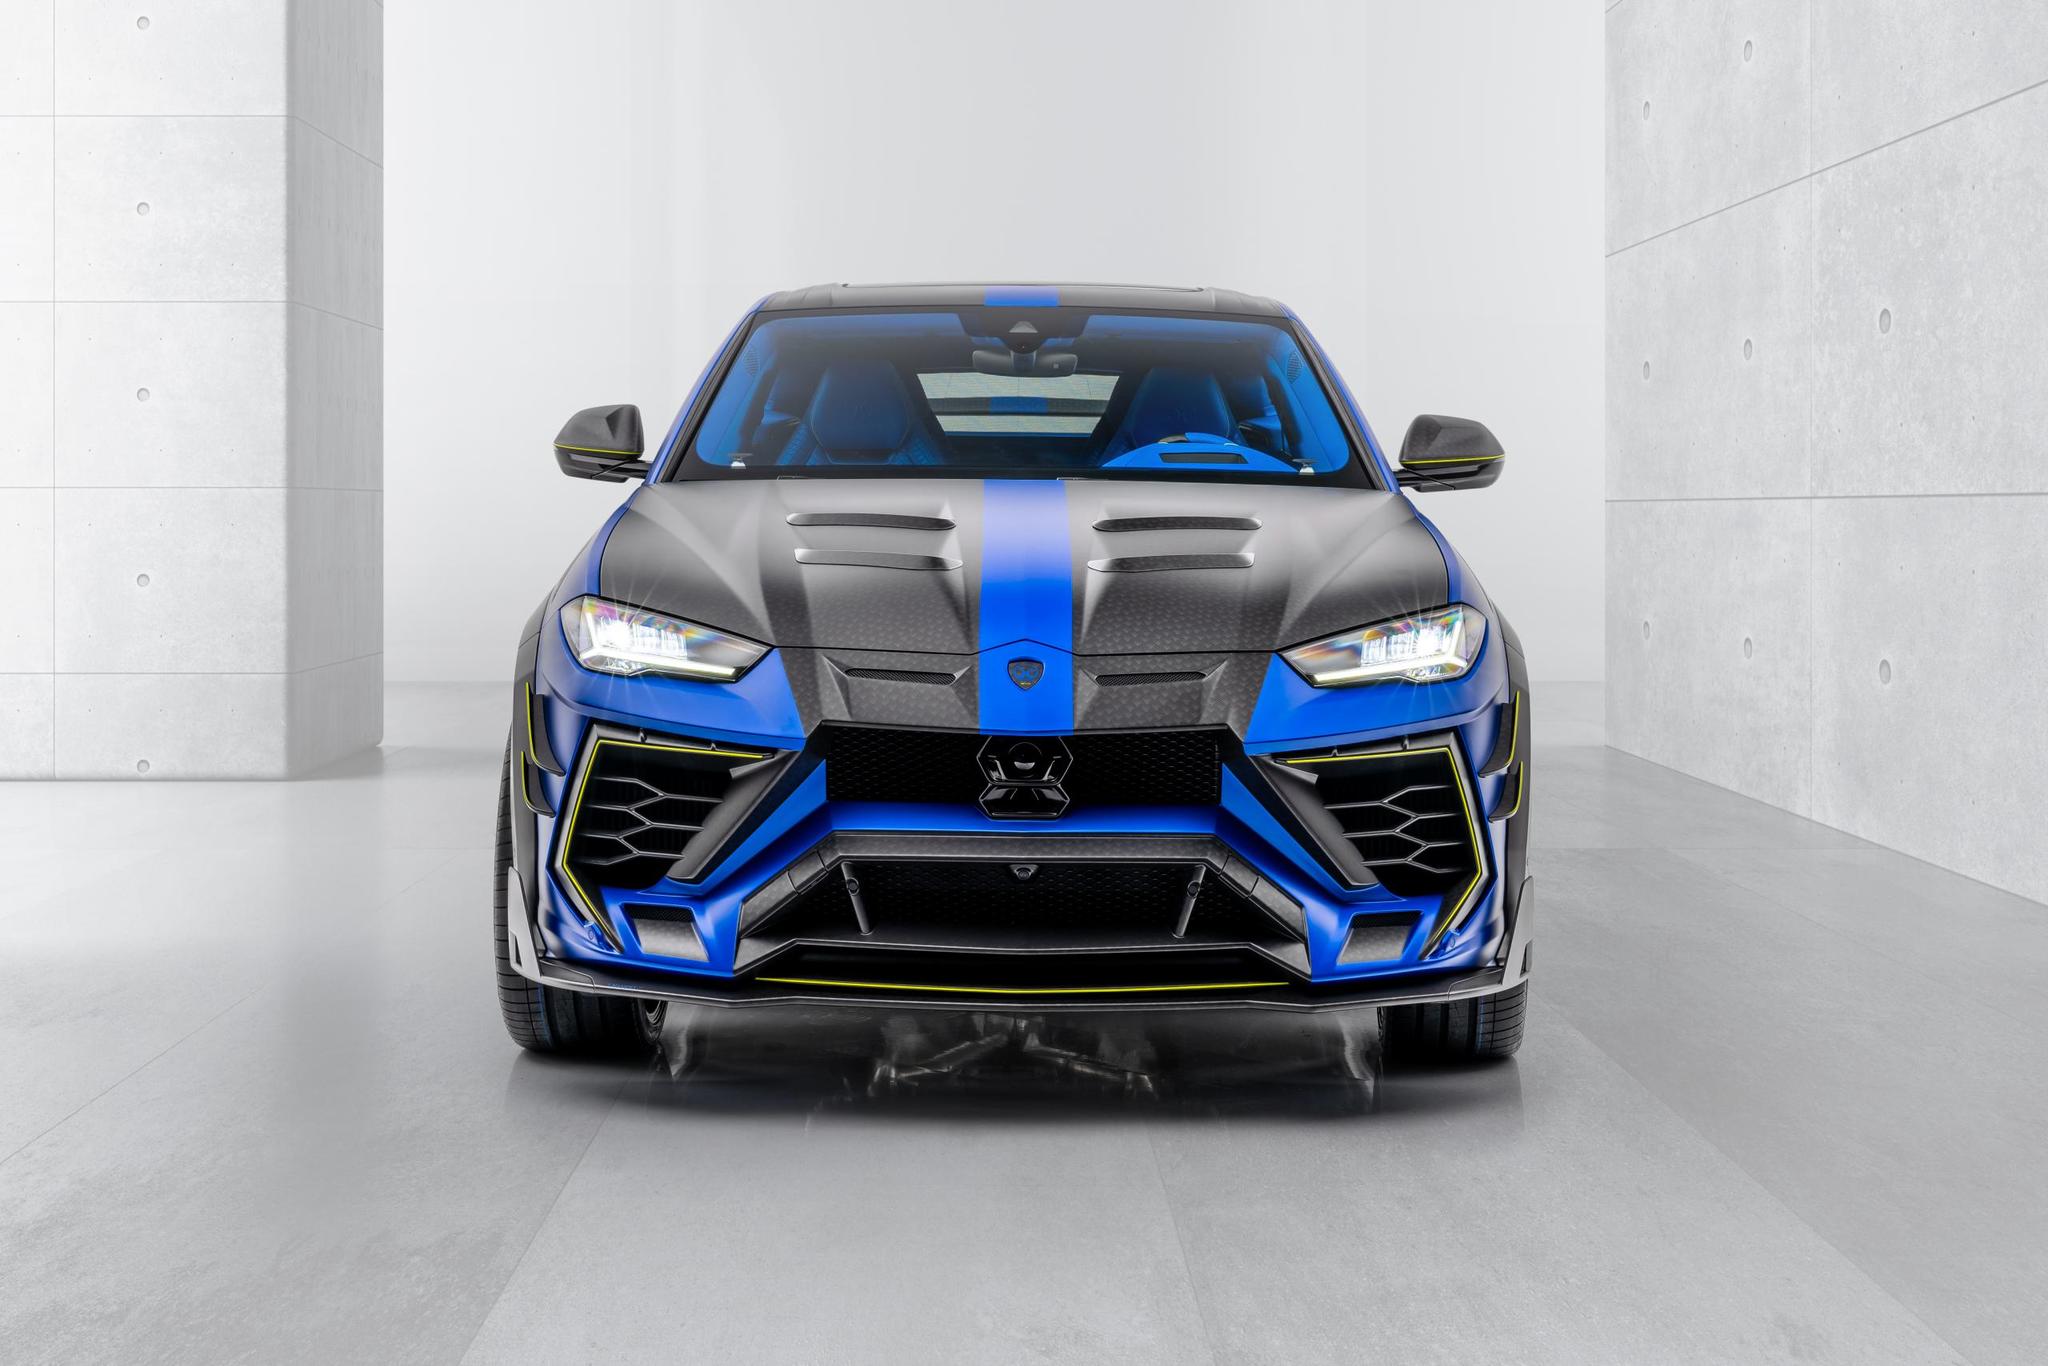 Mansory body kit for Lamborghini Urus carbon